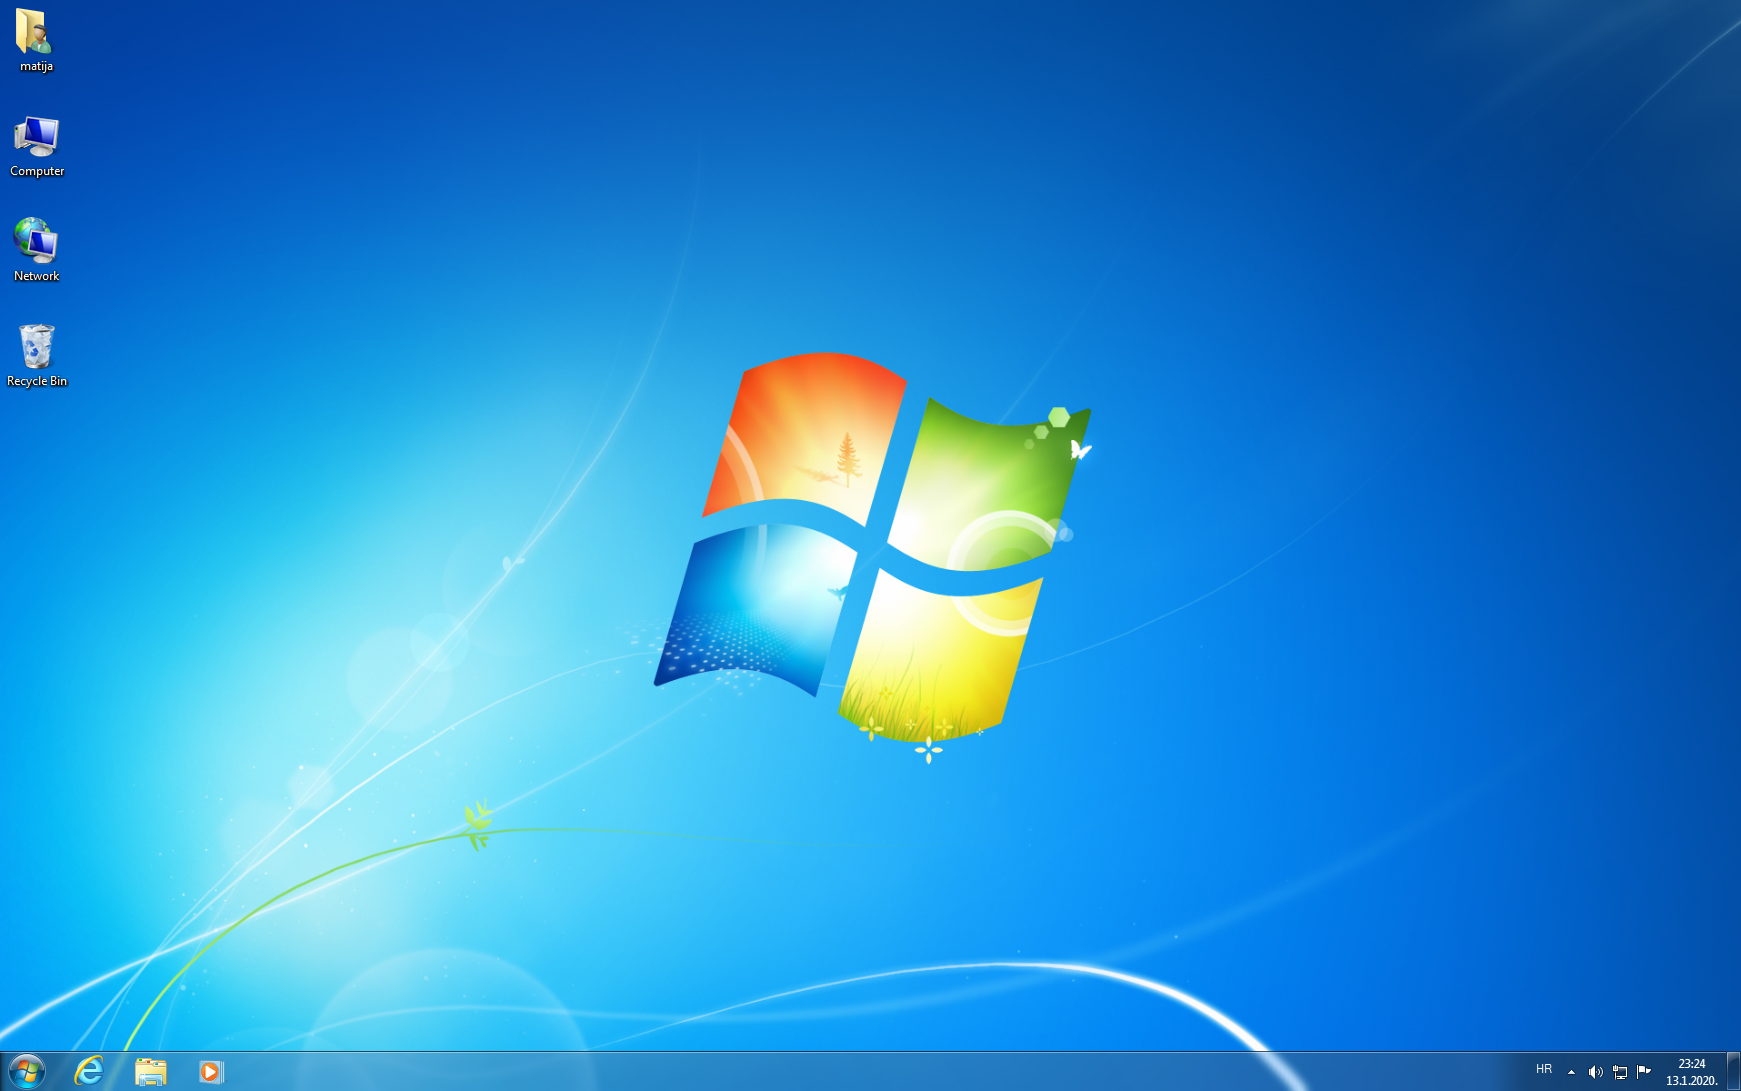 Od danas prestaje podrška za Windows 7 – što sada? - Savjeti @ Bug.hr